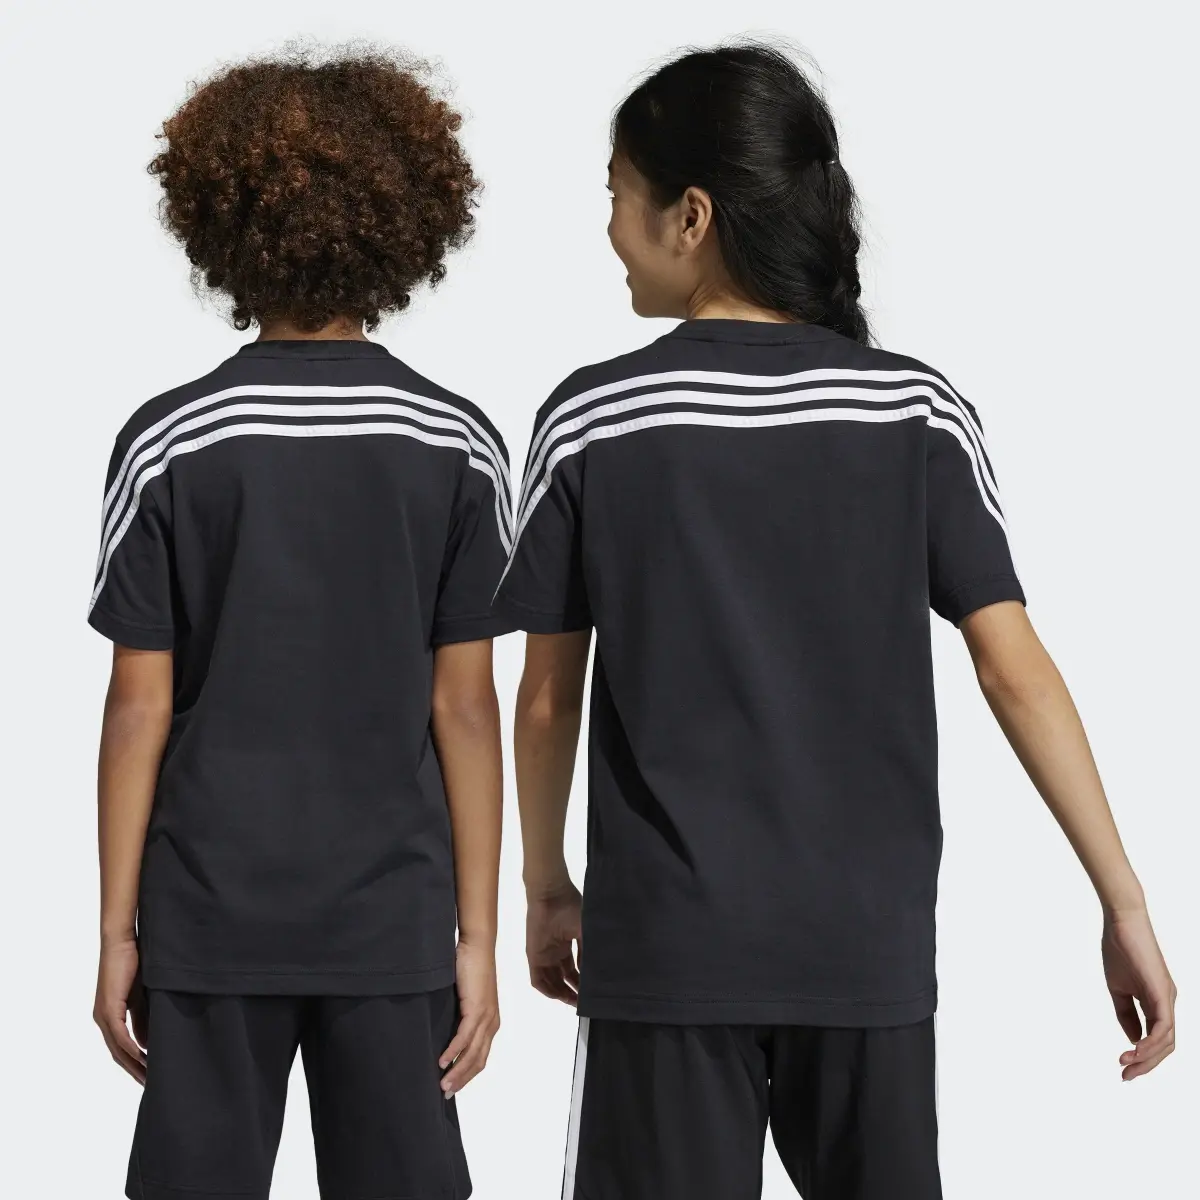 Adidas Future Icons 3-Stripes Tişört. 2